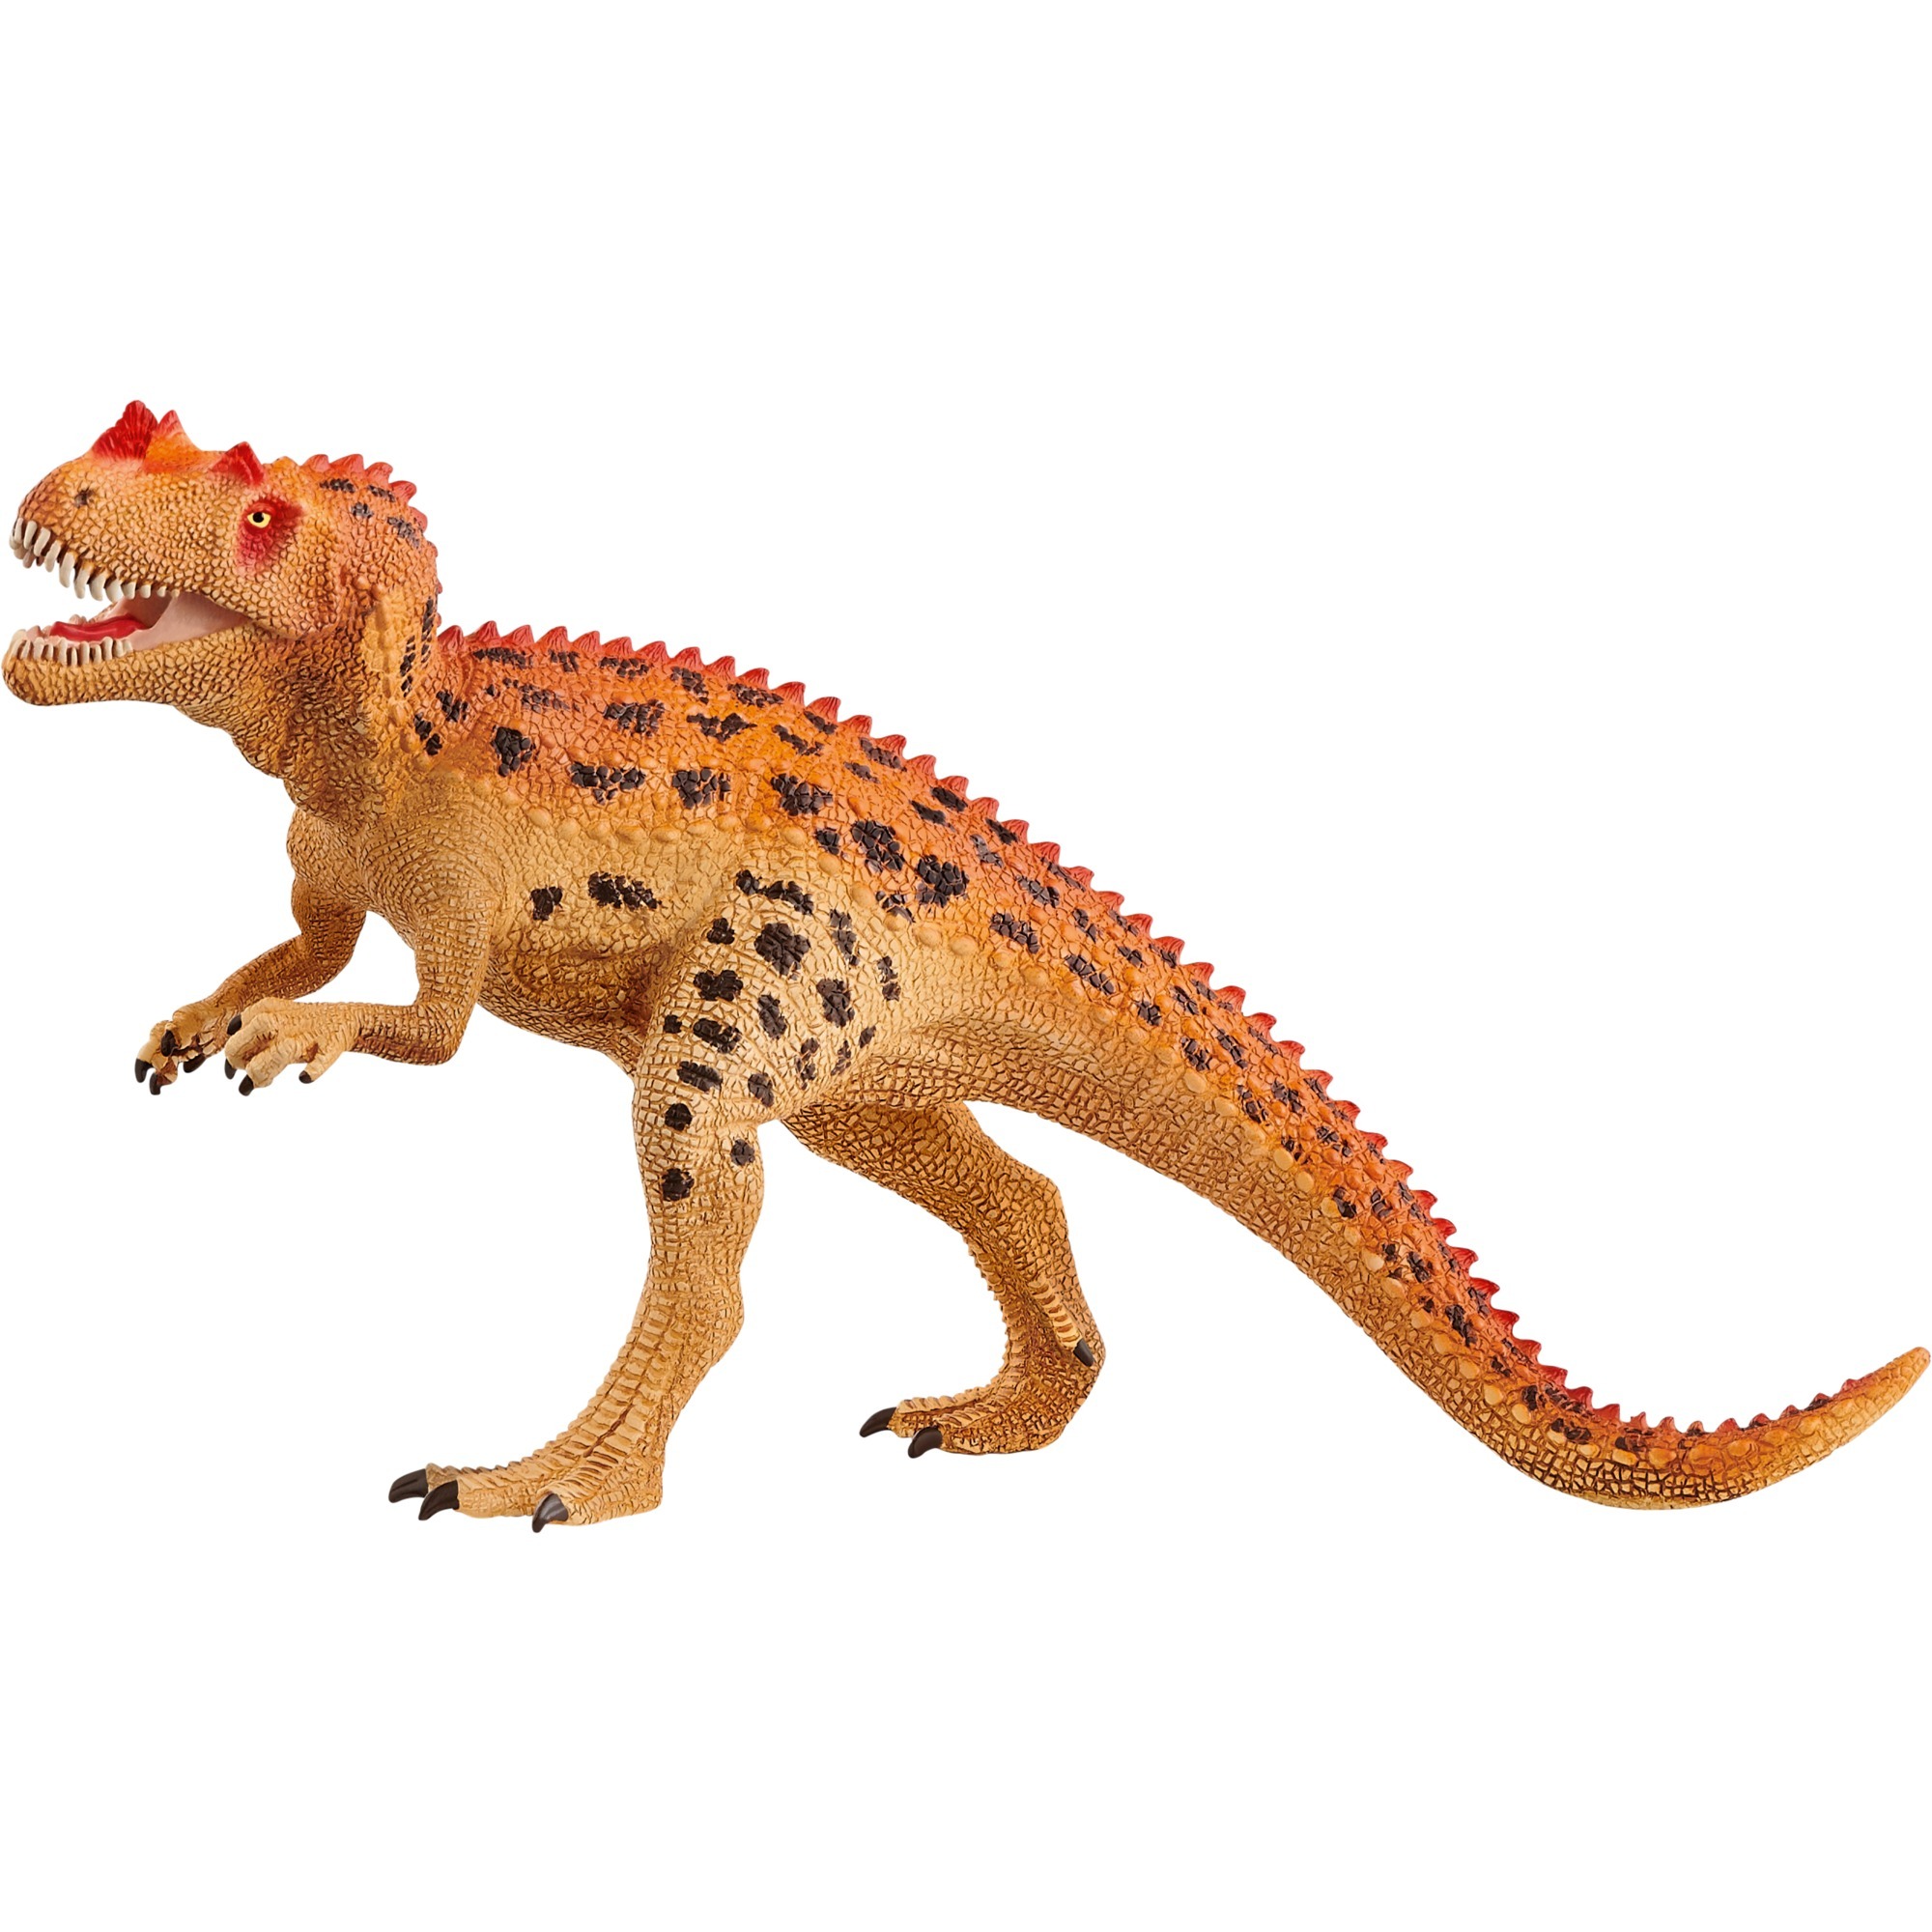 Image of Alternate - Ceratosaurus, Spielfigur online einkaufen bei Alternate